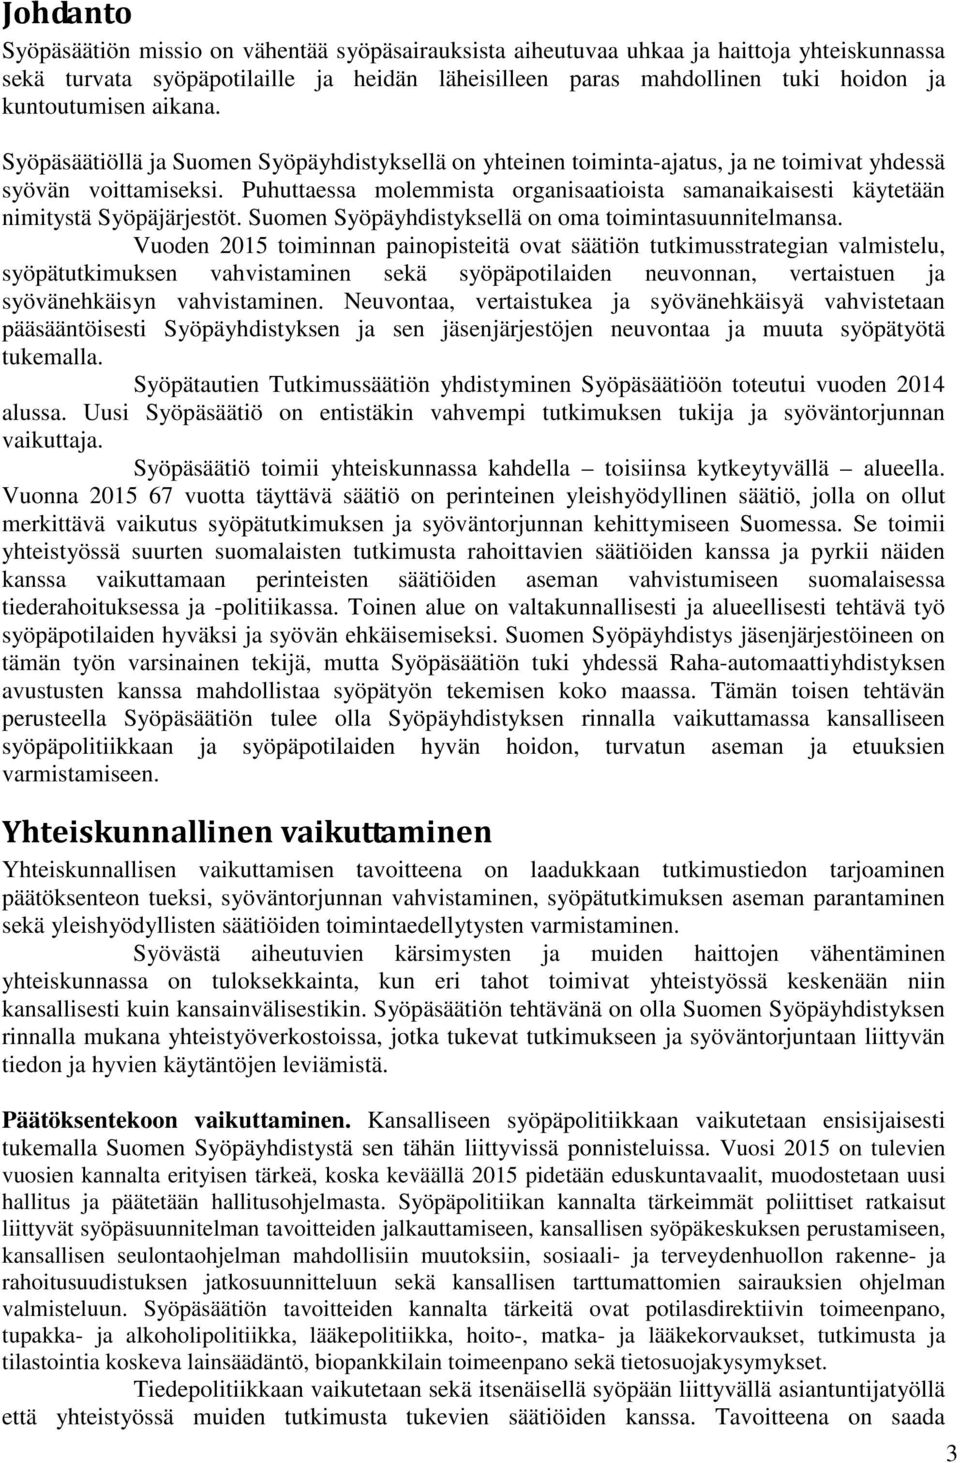 Puhuttaessa molemmista organisaatioista samanaikaisesti käytetään nimitystä Syöpäjärjestöt. Suomen Syöpäyhdistyksellä on oma toimintasuunnitelmansa.